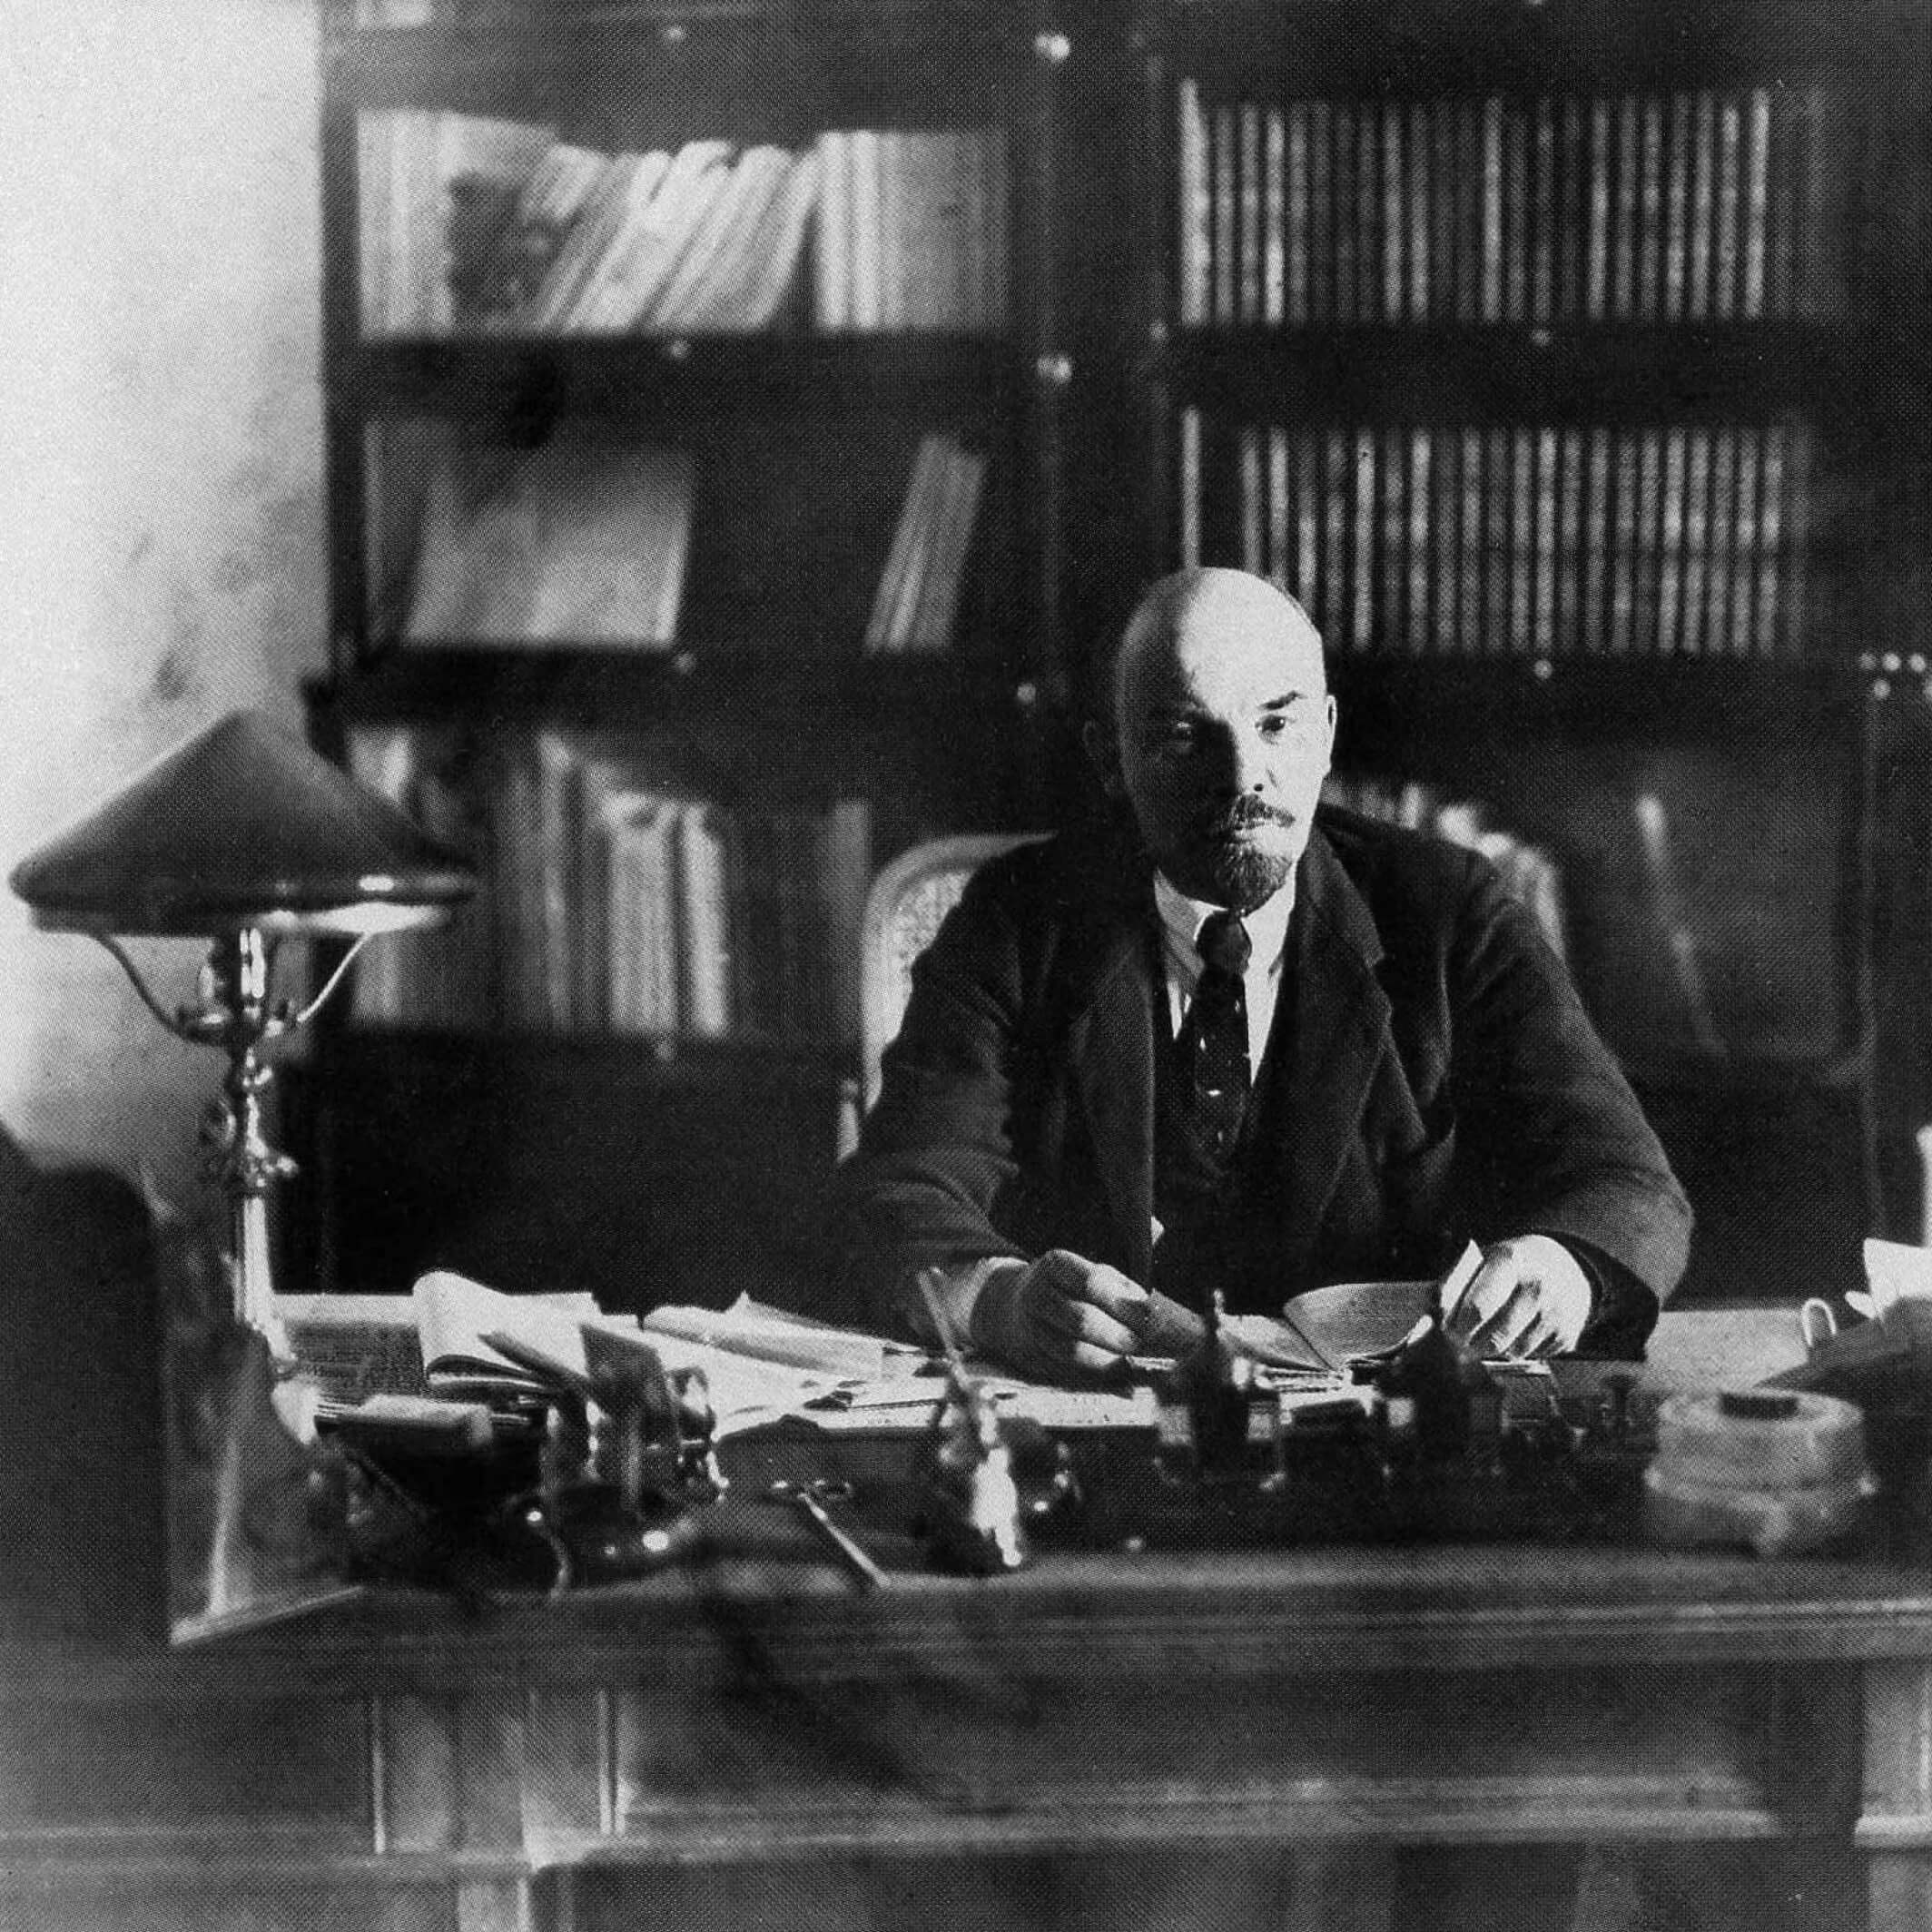 Ленин за рабочим столом в своем кабинете в Кремле, октябрь 1918 г. Фотограф: П. А. Оцуп